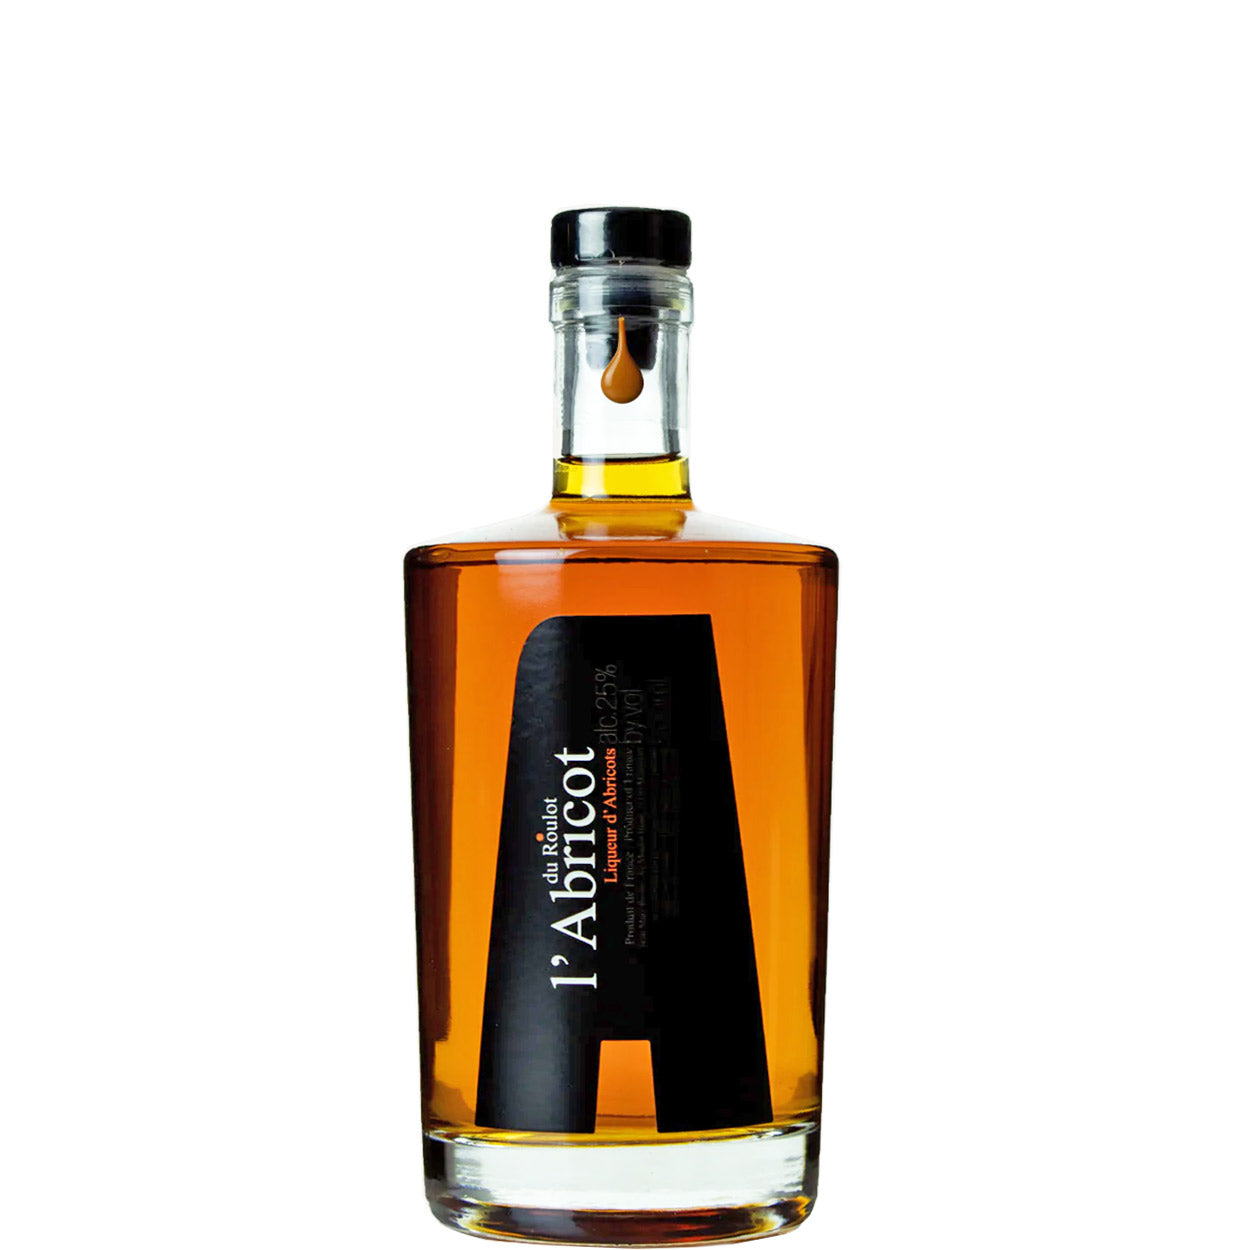 Domaine Roulot, L'abricot Du Roulot Apricot Liquor, Nv (16024)